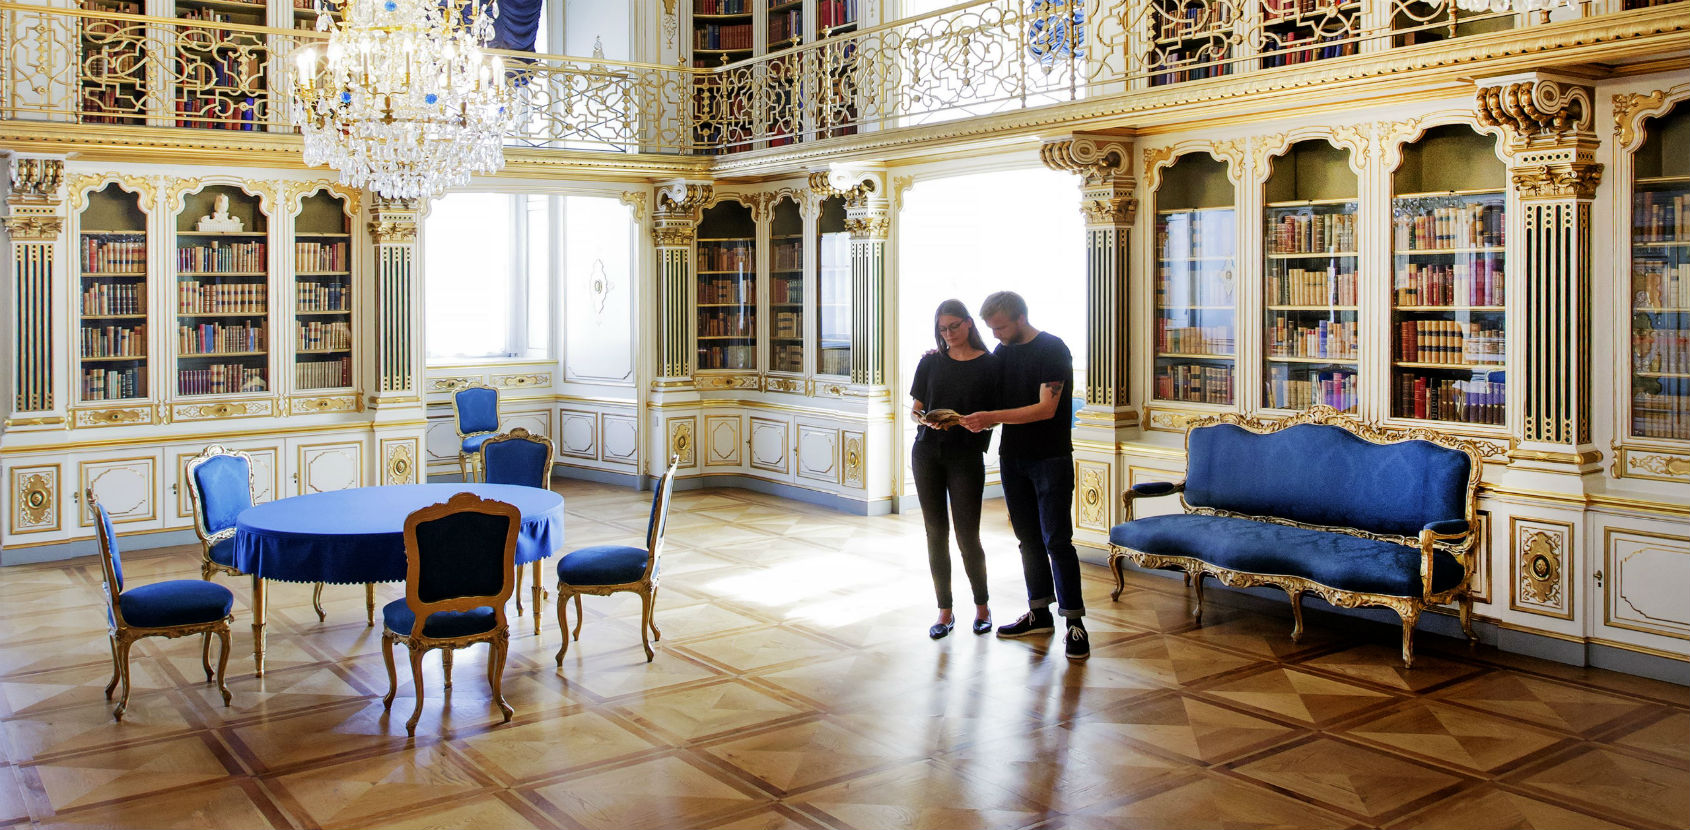 Dronningens Håndbibliotek Christiansborg Slot mand og kvinde foto Thorkild Jensen 